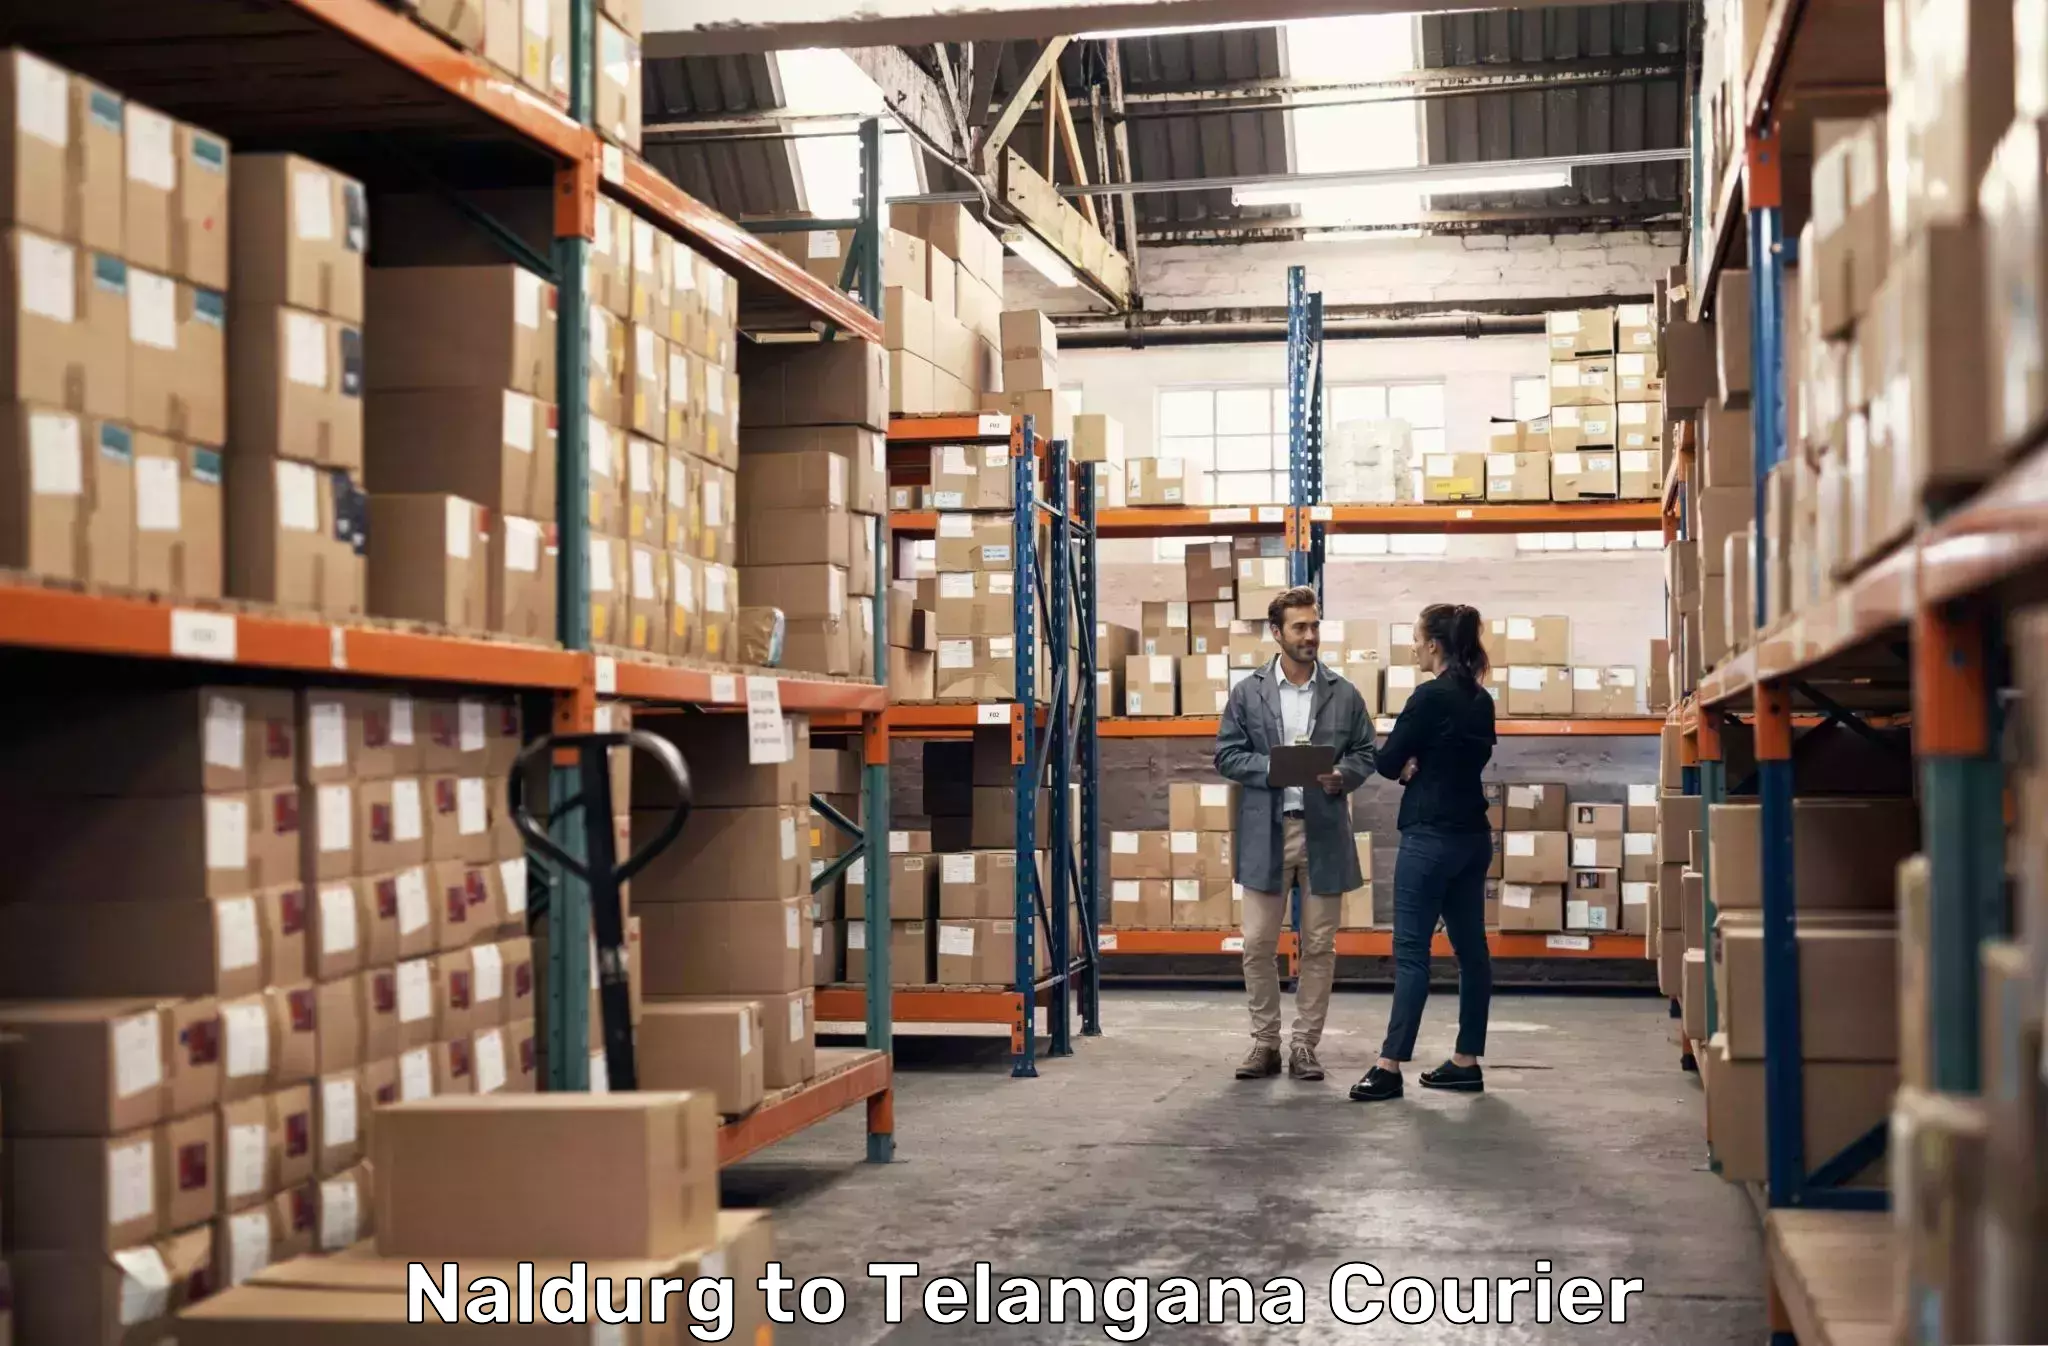 Global parcel delivery Naldurg to Nirmal